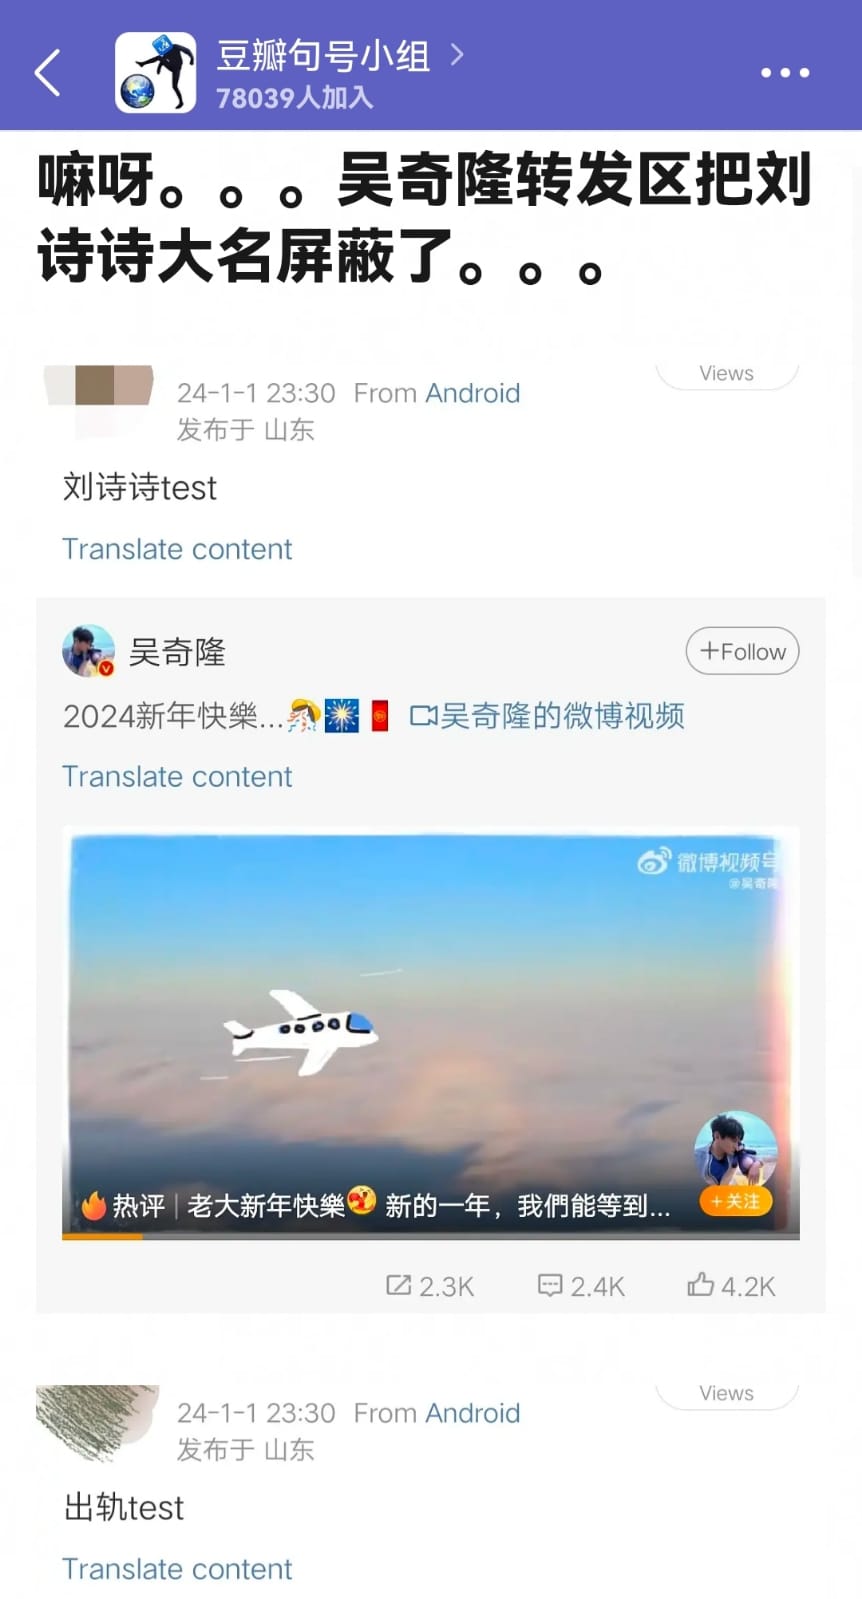 最近有粉丝发现吴奇隆微博“刘诗诗”、“离婚”、“出轨”字眼被屏蔽。